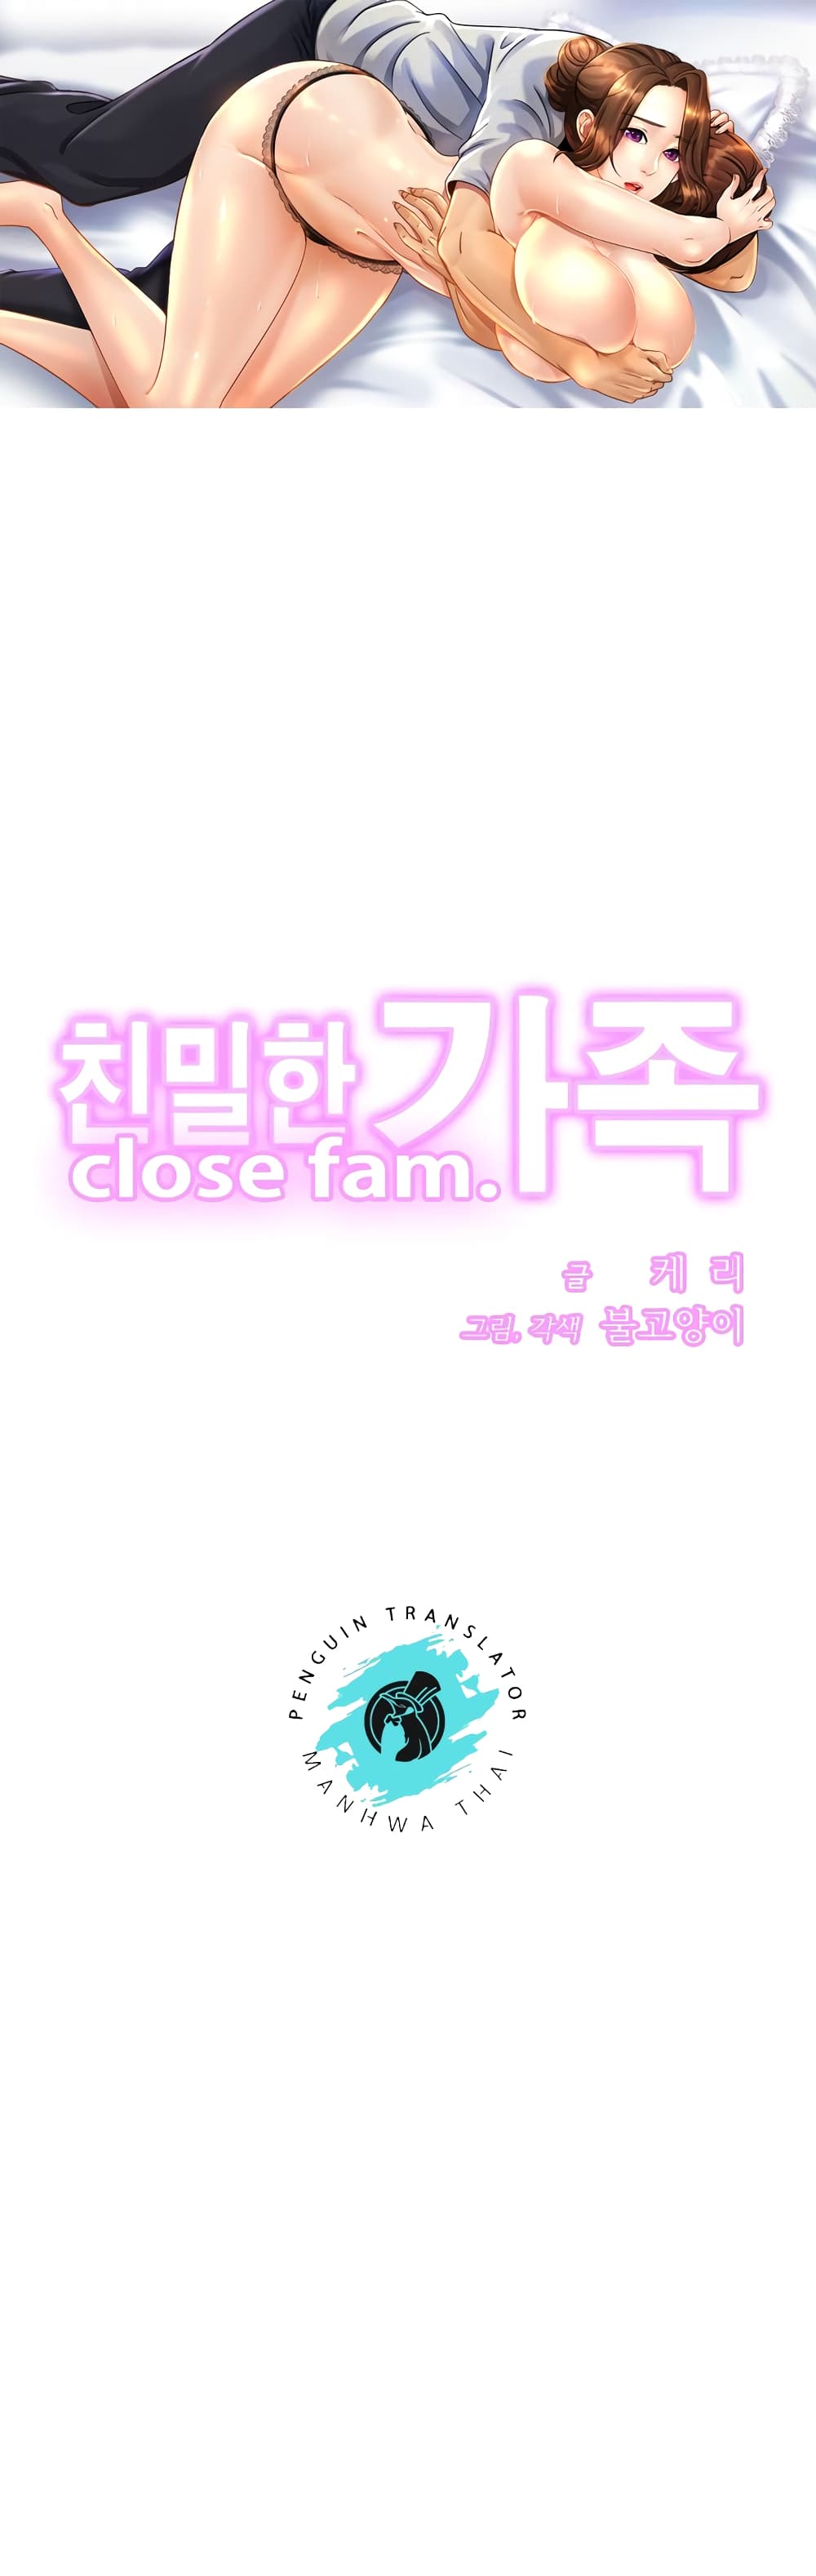 Close Family 34 (1)